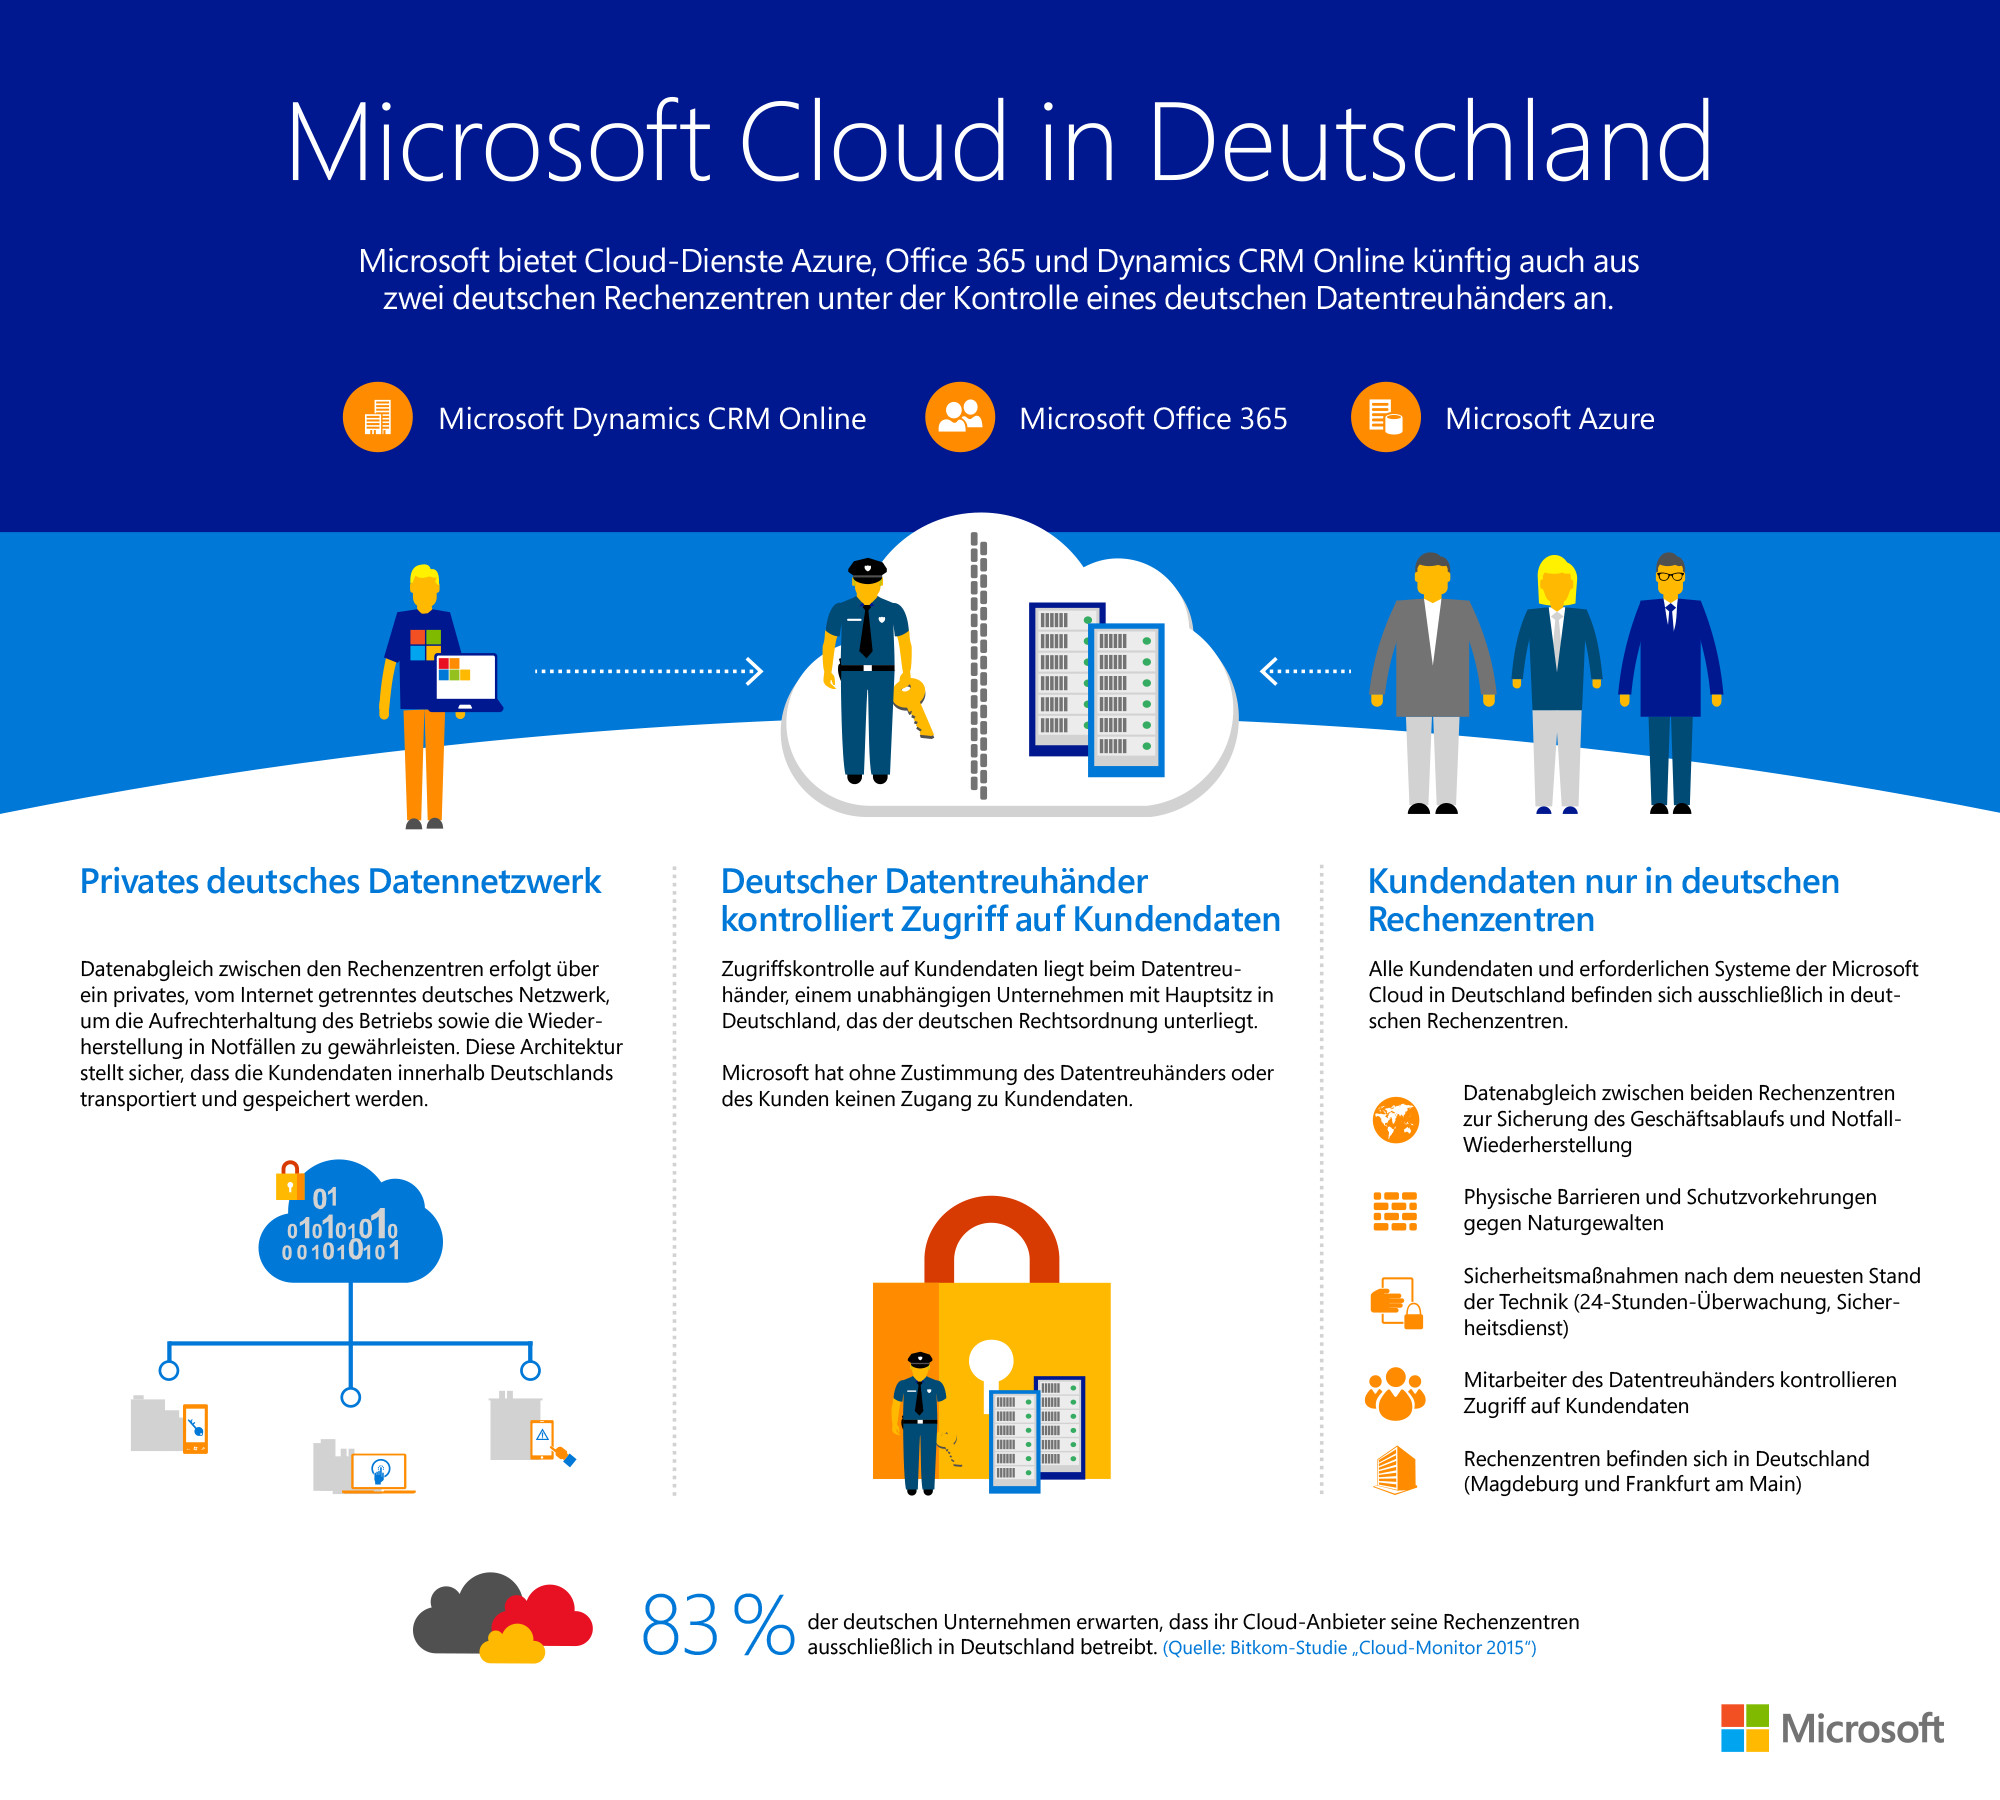 Azure Deutschland: Microsoft bietet Cloud-Dienste jetzt aus deutschen Rechenzentren an